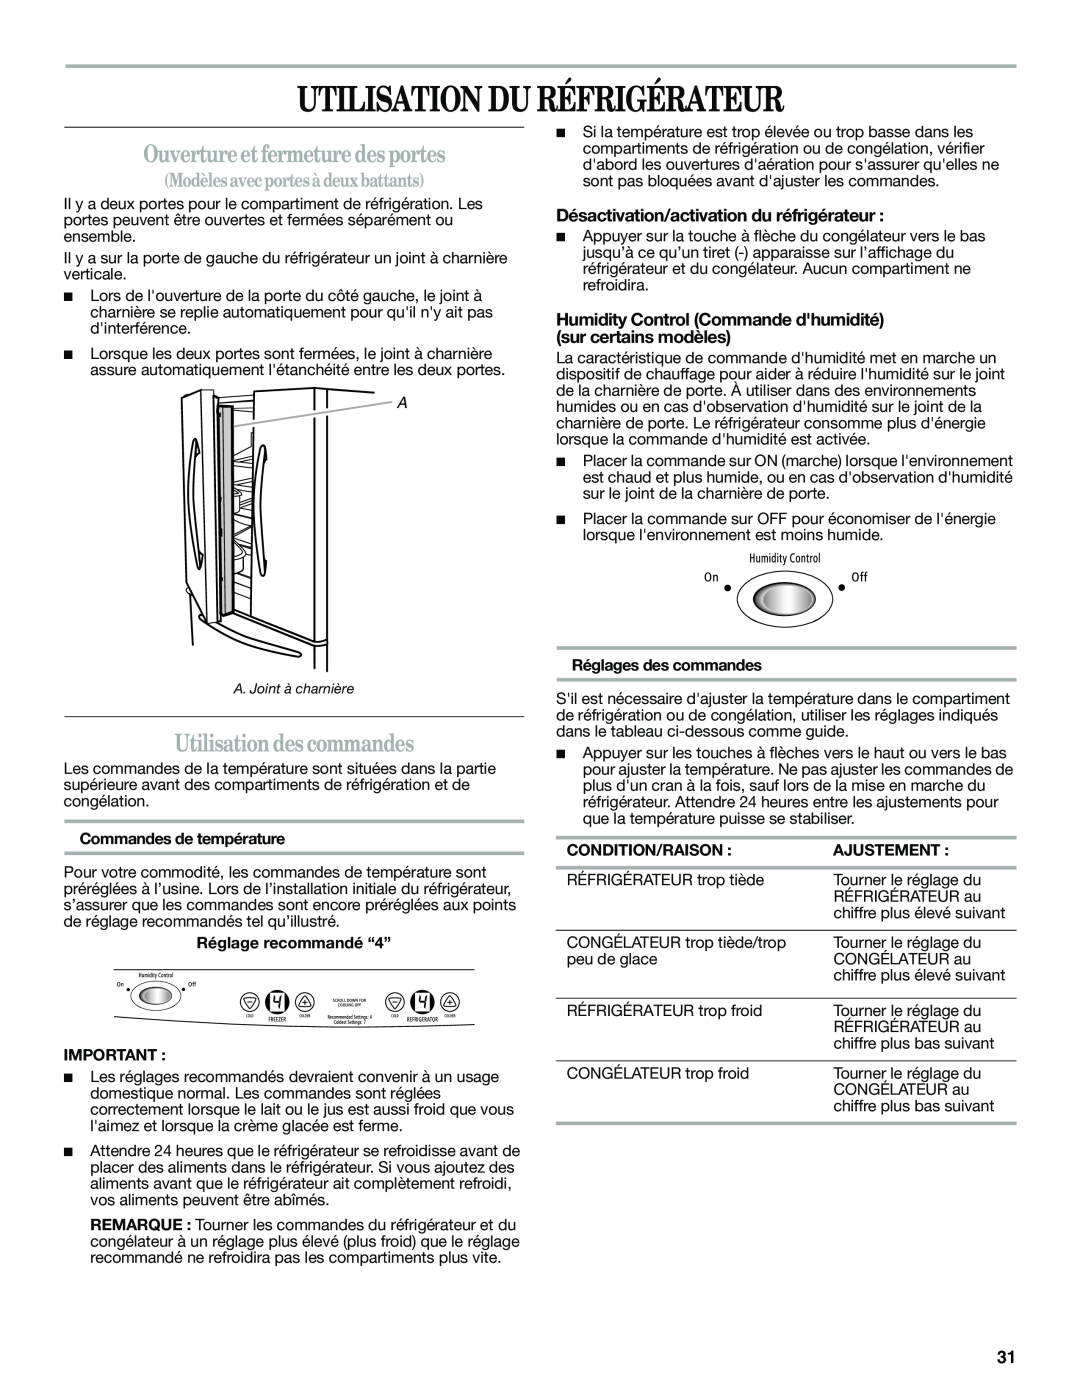 Amana W10366212A Utilisation Du Réfrigérateur, Ouvertureet fermeture des portes, Utilisation des commandes, Ajustement 